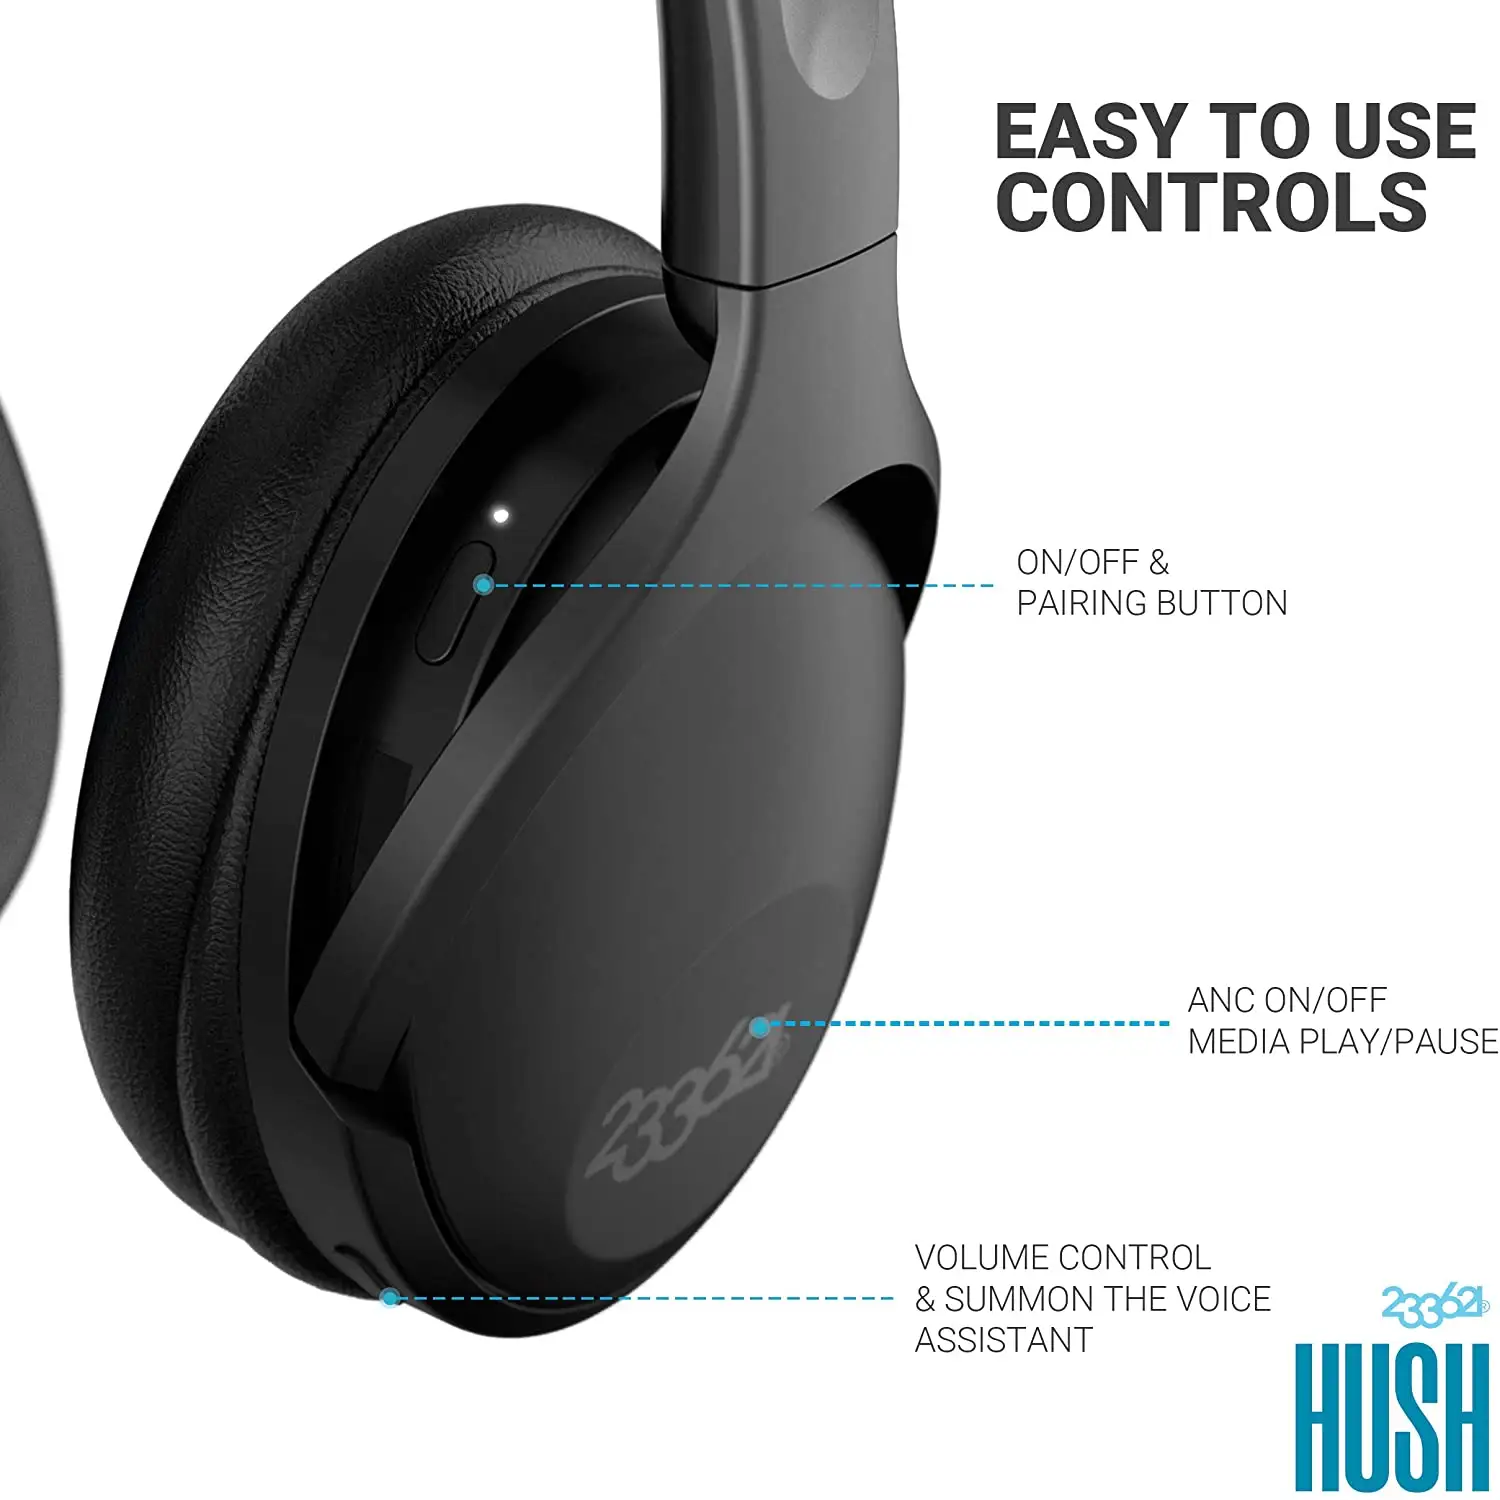 Anfrage senden, Geschenk gewinnen! 100 Stunden Spielzeit Bluetooth Wireless Noise Cancel ling Ear phones, für Sony Head phone - HUSH